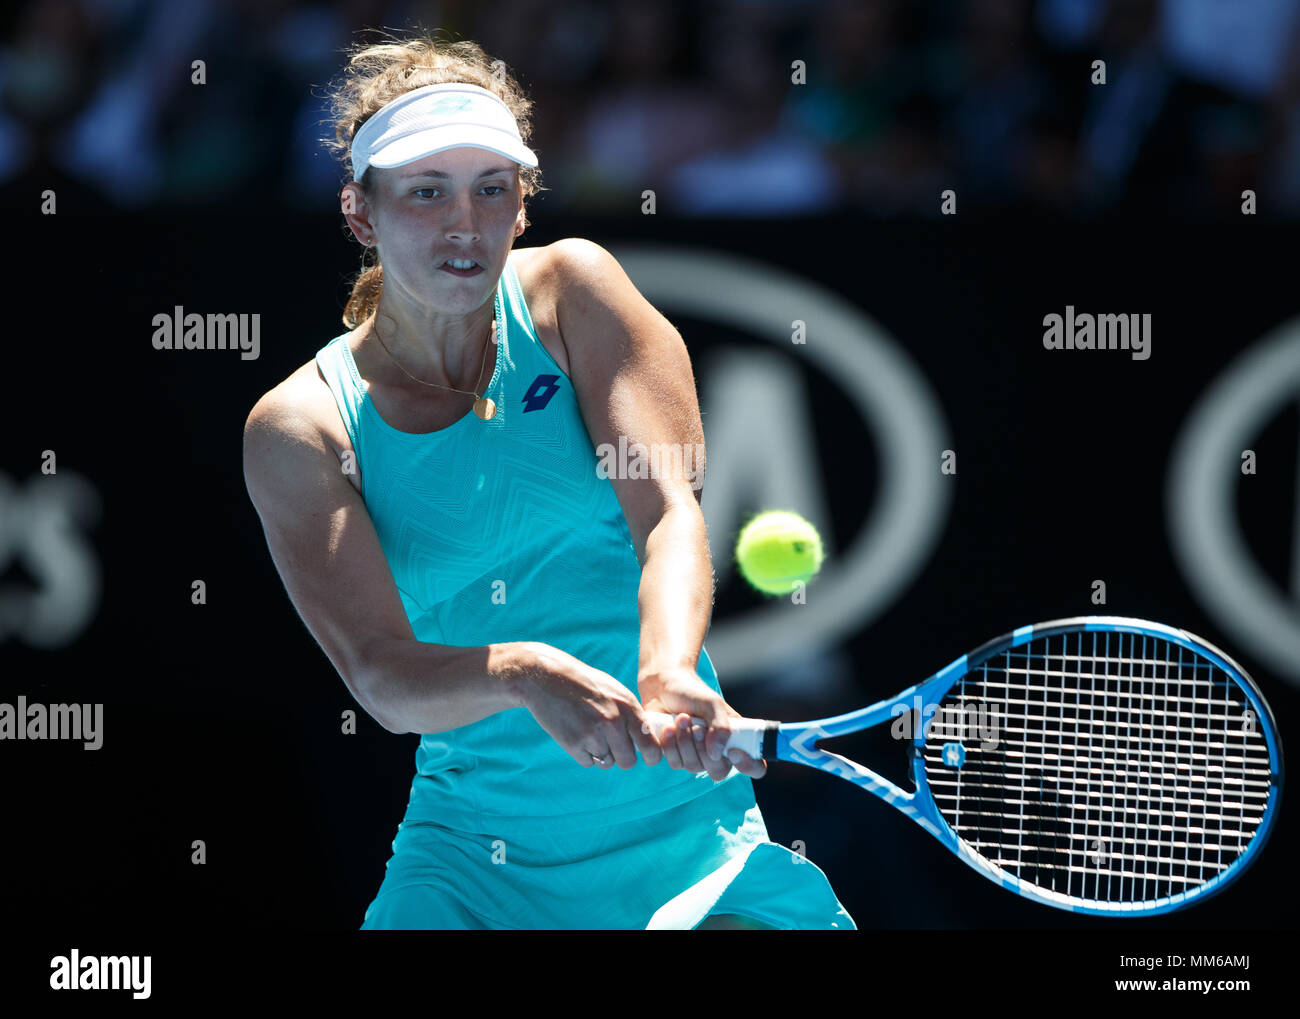 Belga giocatore di tennis Elise Mertens giocando scritto shot in Australian Open 2018 Torneo di Tennis, Melbourne Park, Melbourne, Victoria, Australia. Foto Stock